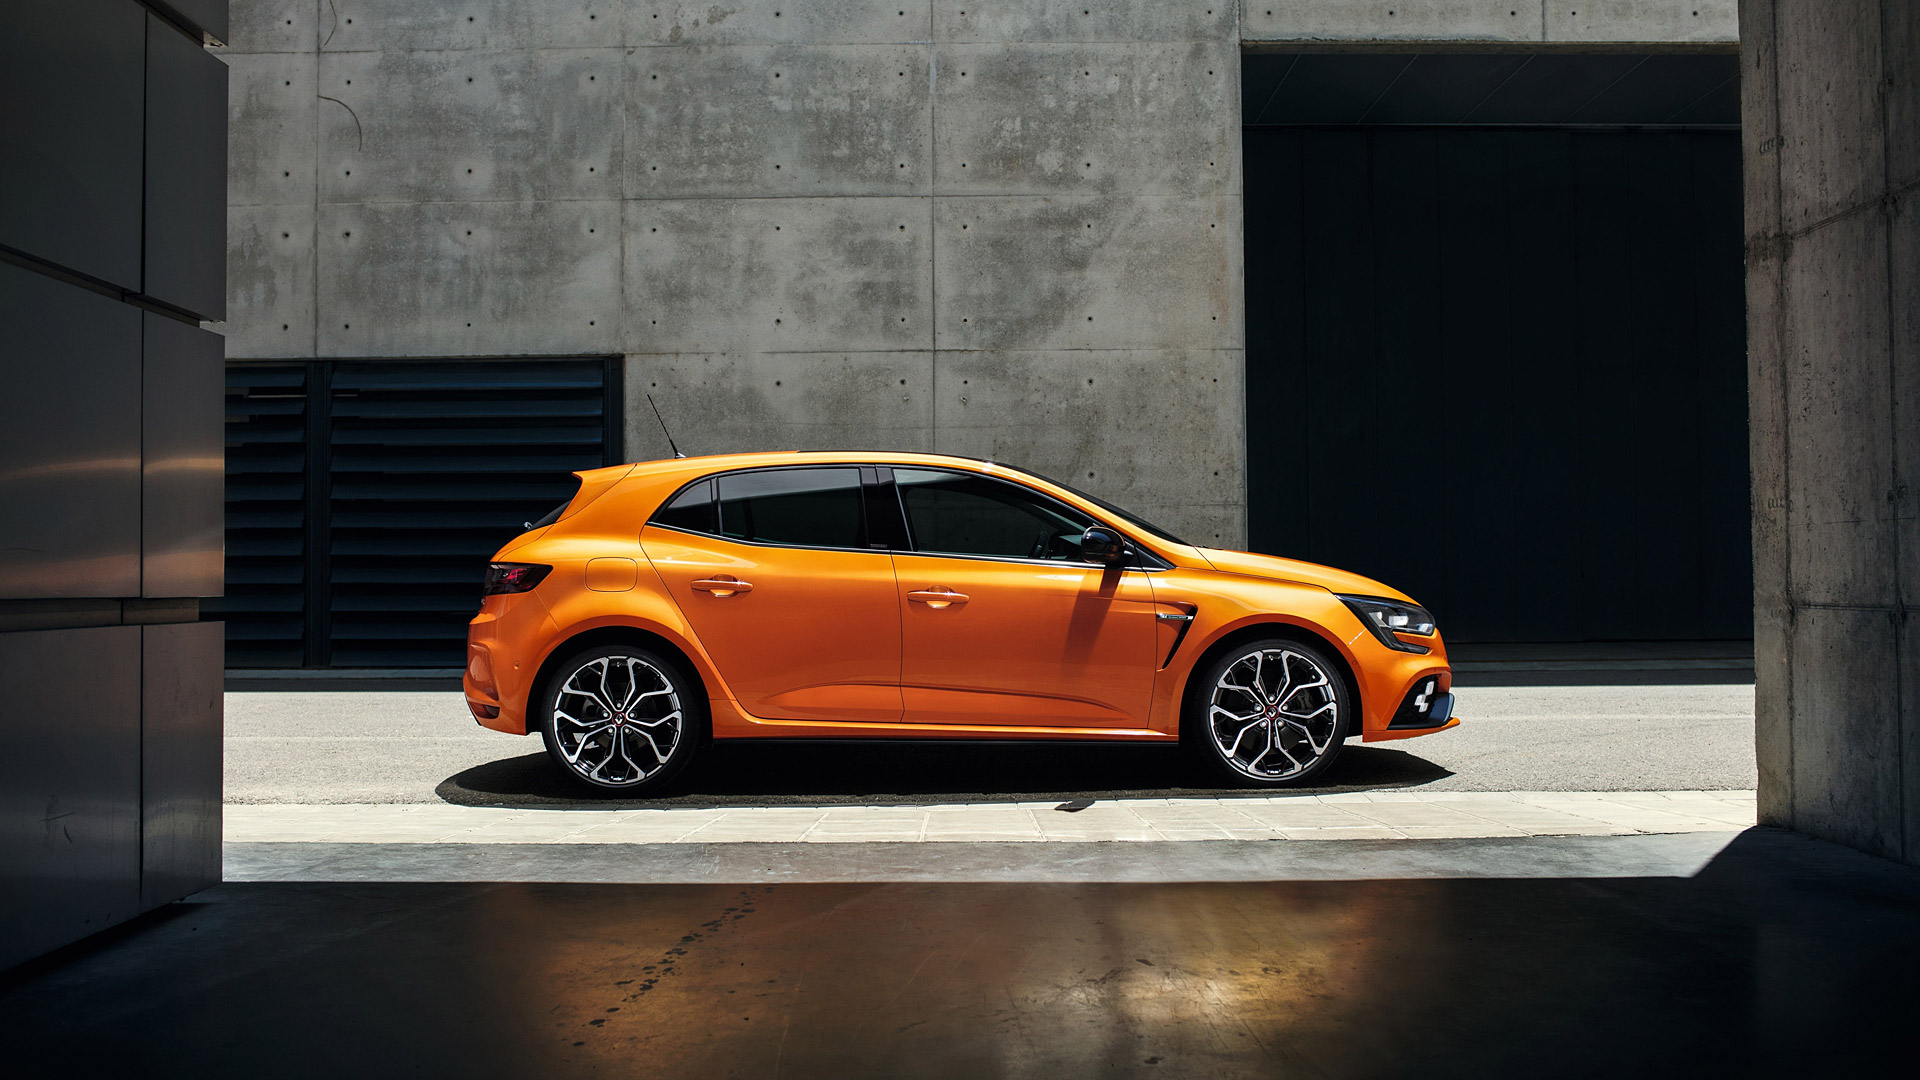 vehicles, renault megane, hatchback, orange car, renault Image for desktop